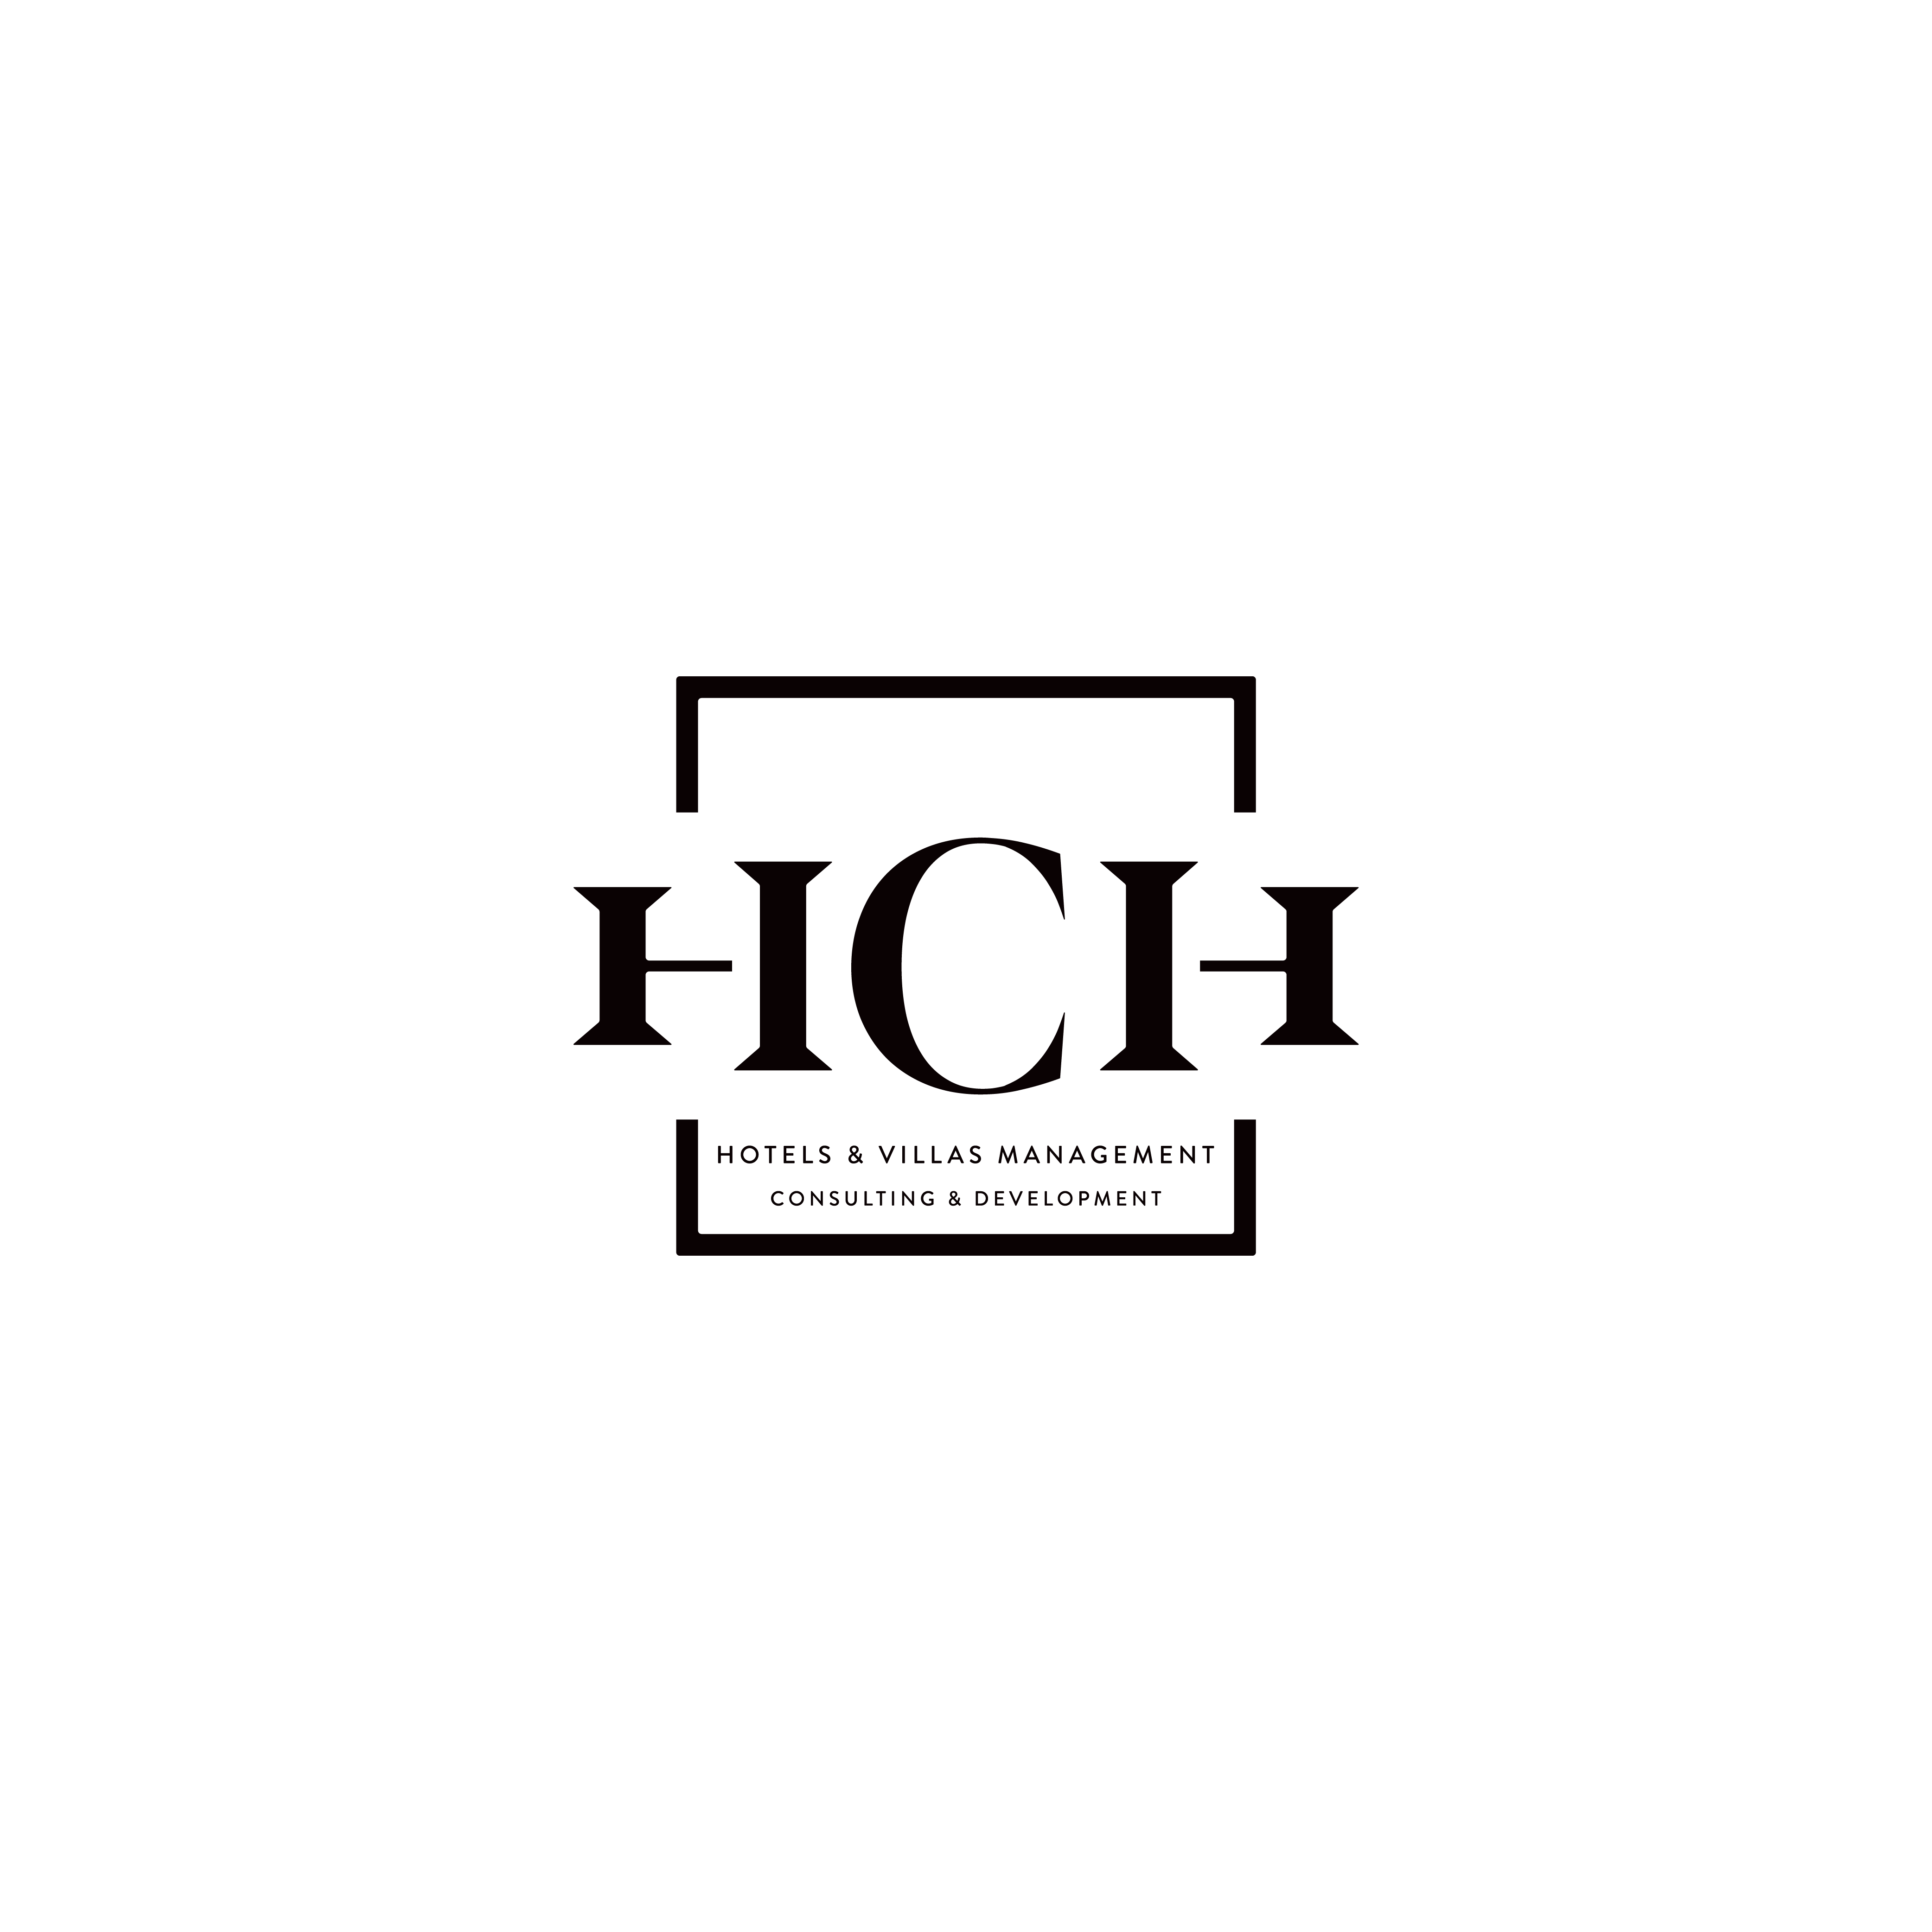 Logo-HCH-Regular-Tagline-BLK@300ppi